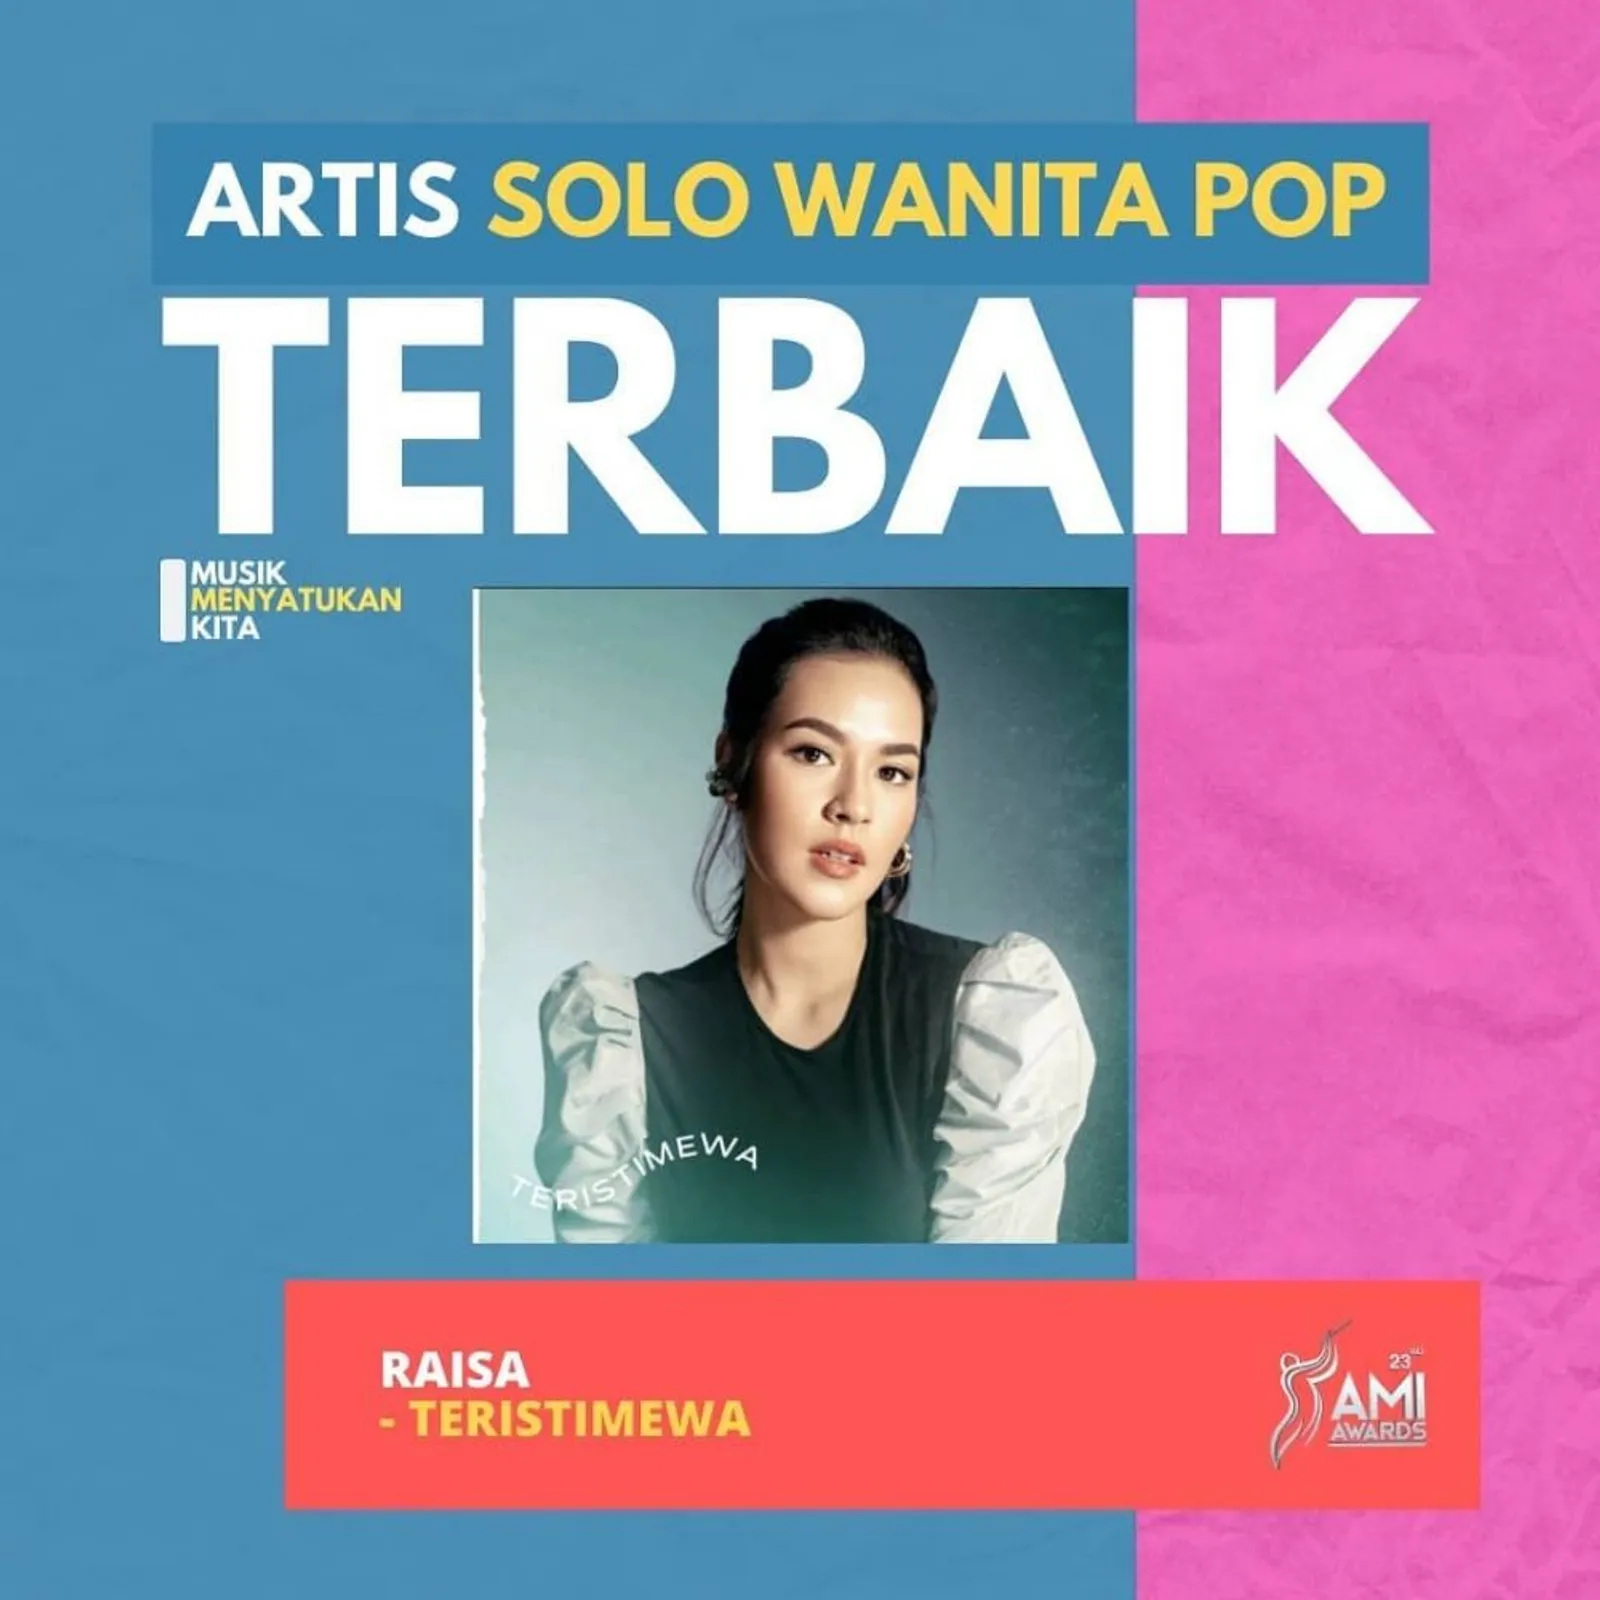 Karya Musik Terbaik Indonesia, Daftar Lengkap Pemenang AMI Awards 2020